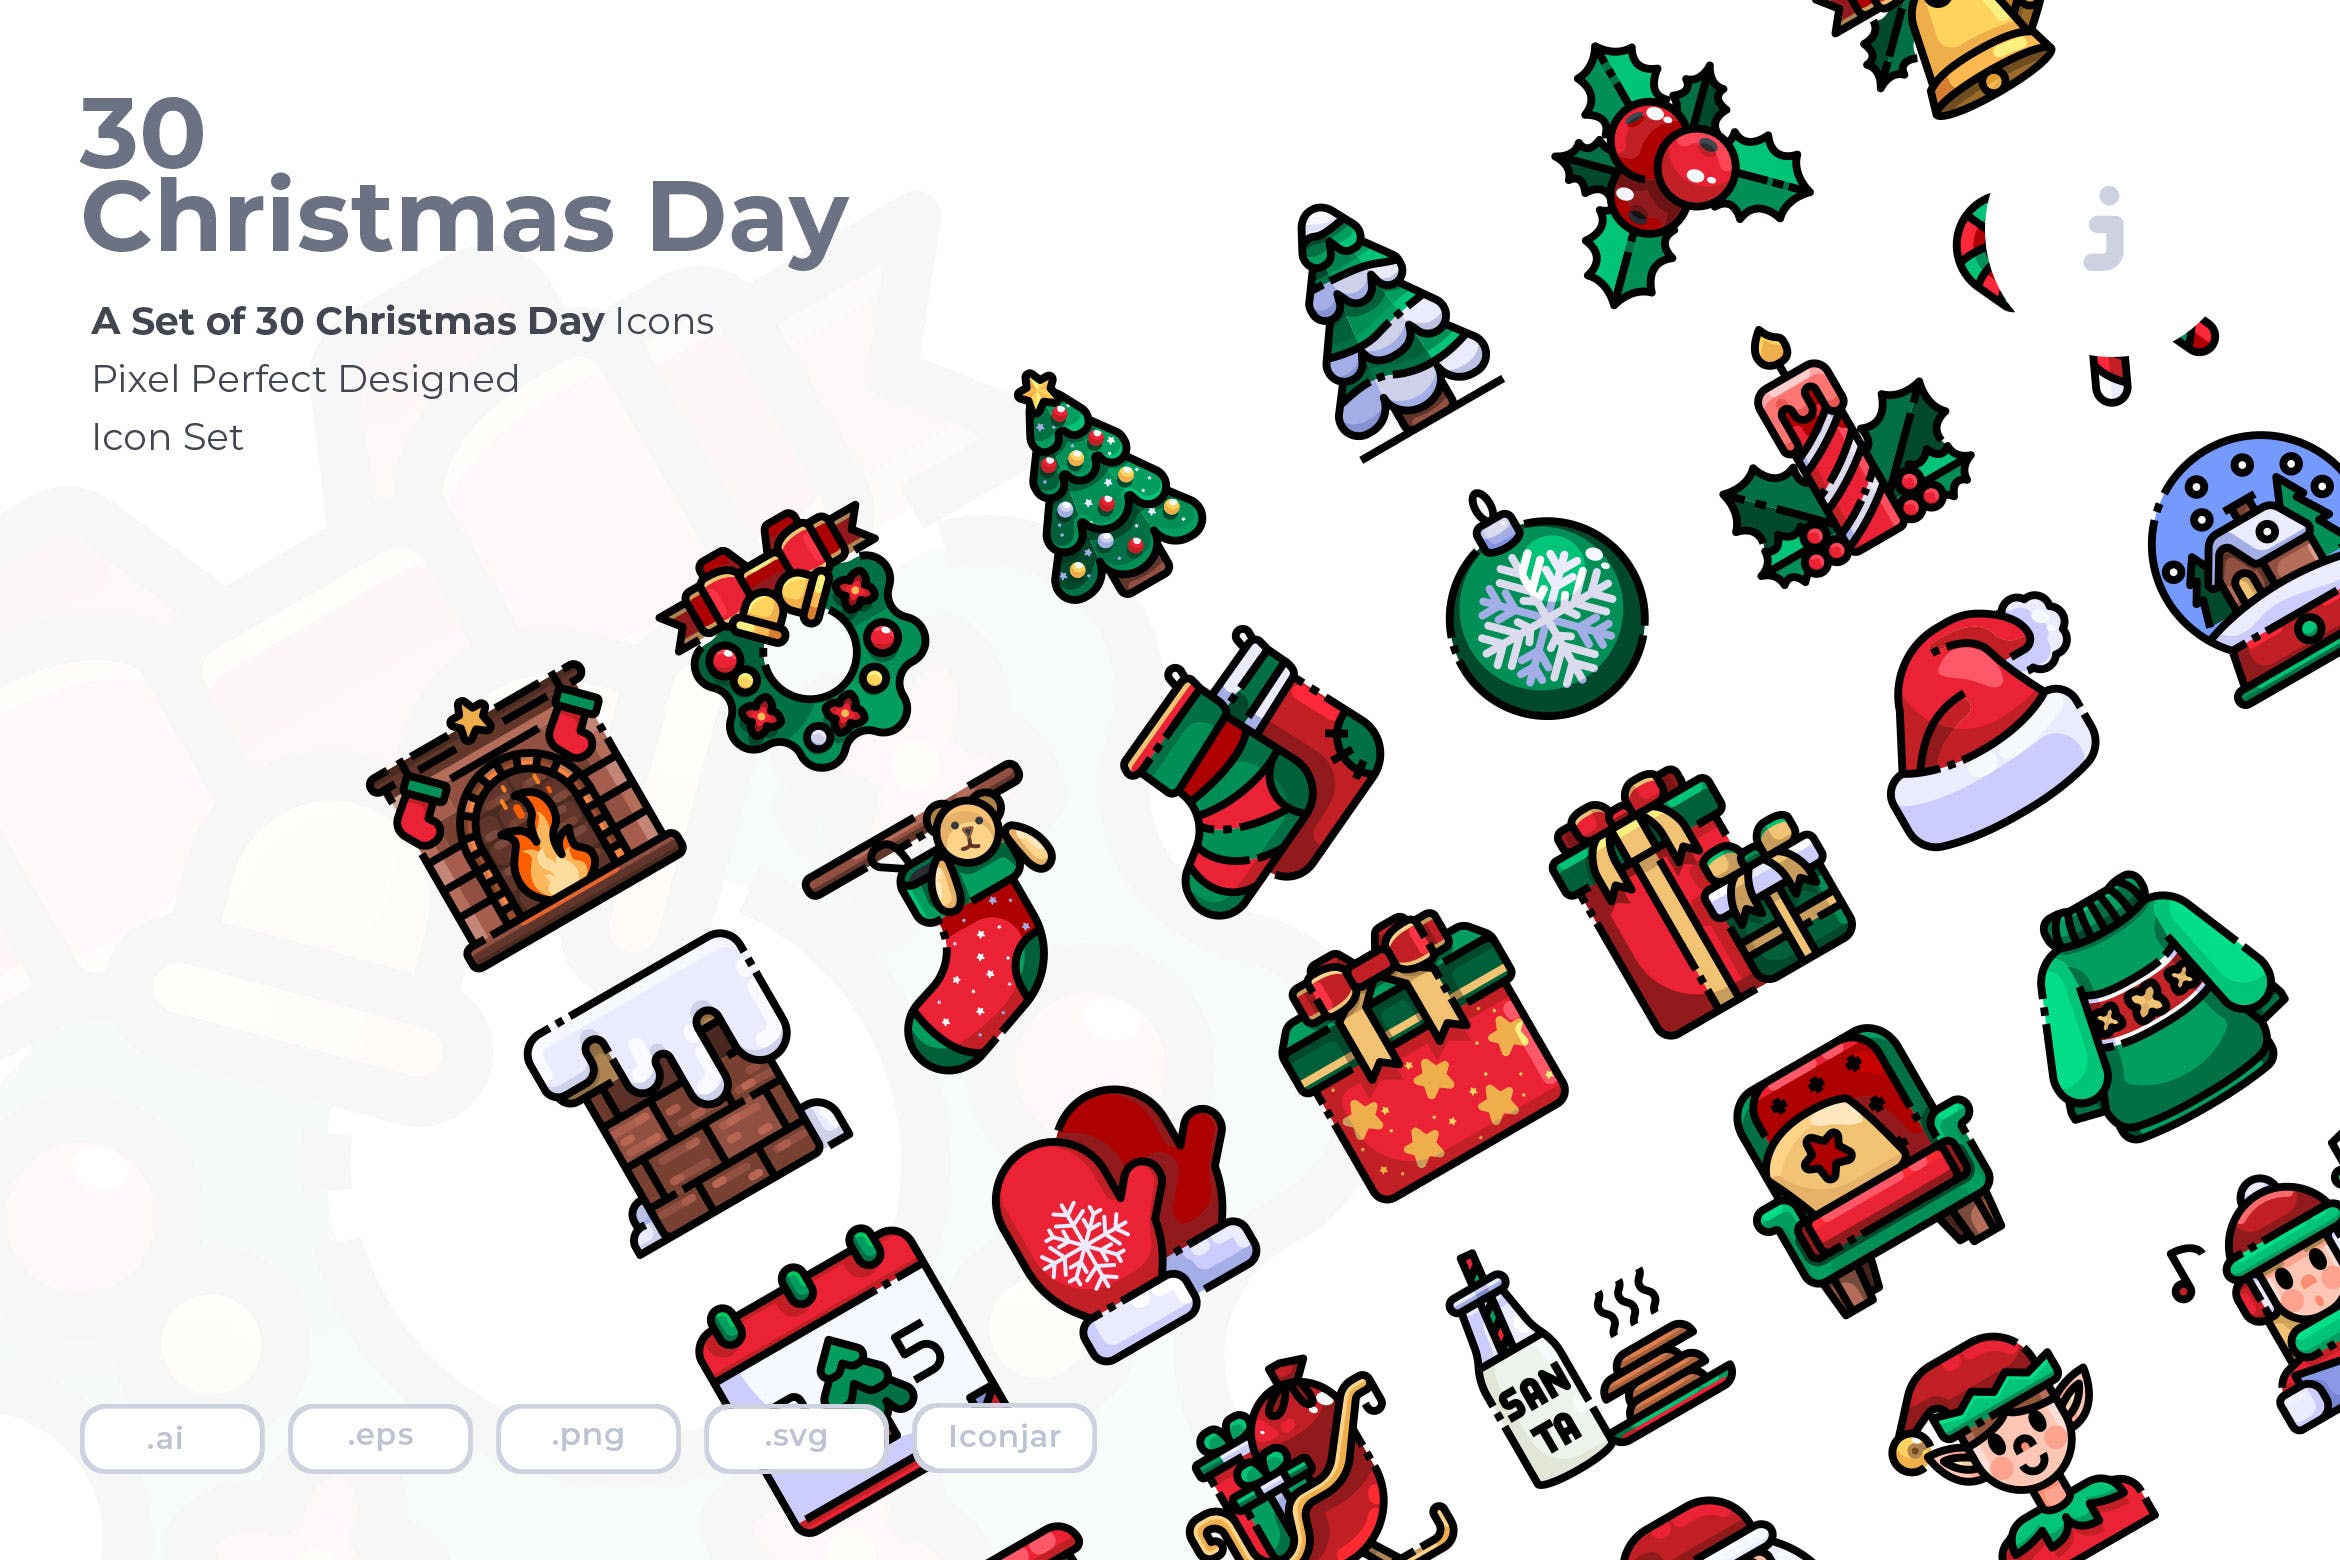 30枚圣诞节主题矢量图标 30 Christmas Day Icons插图